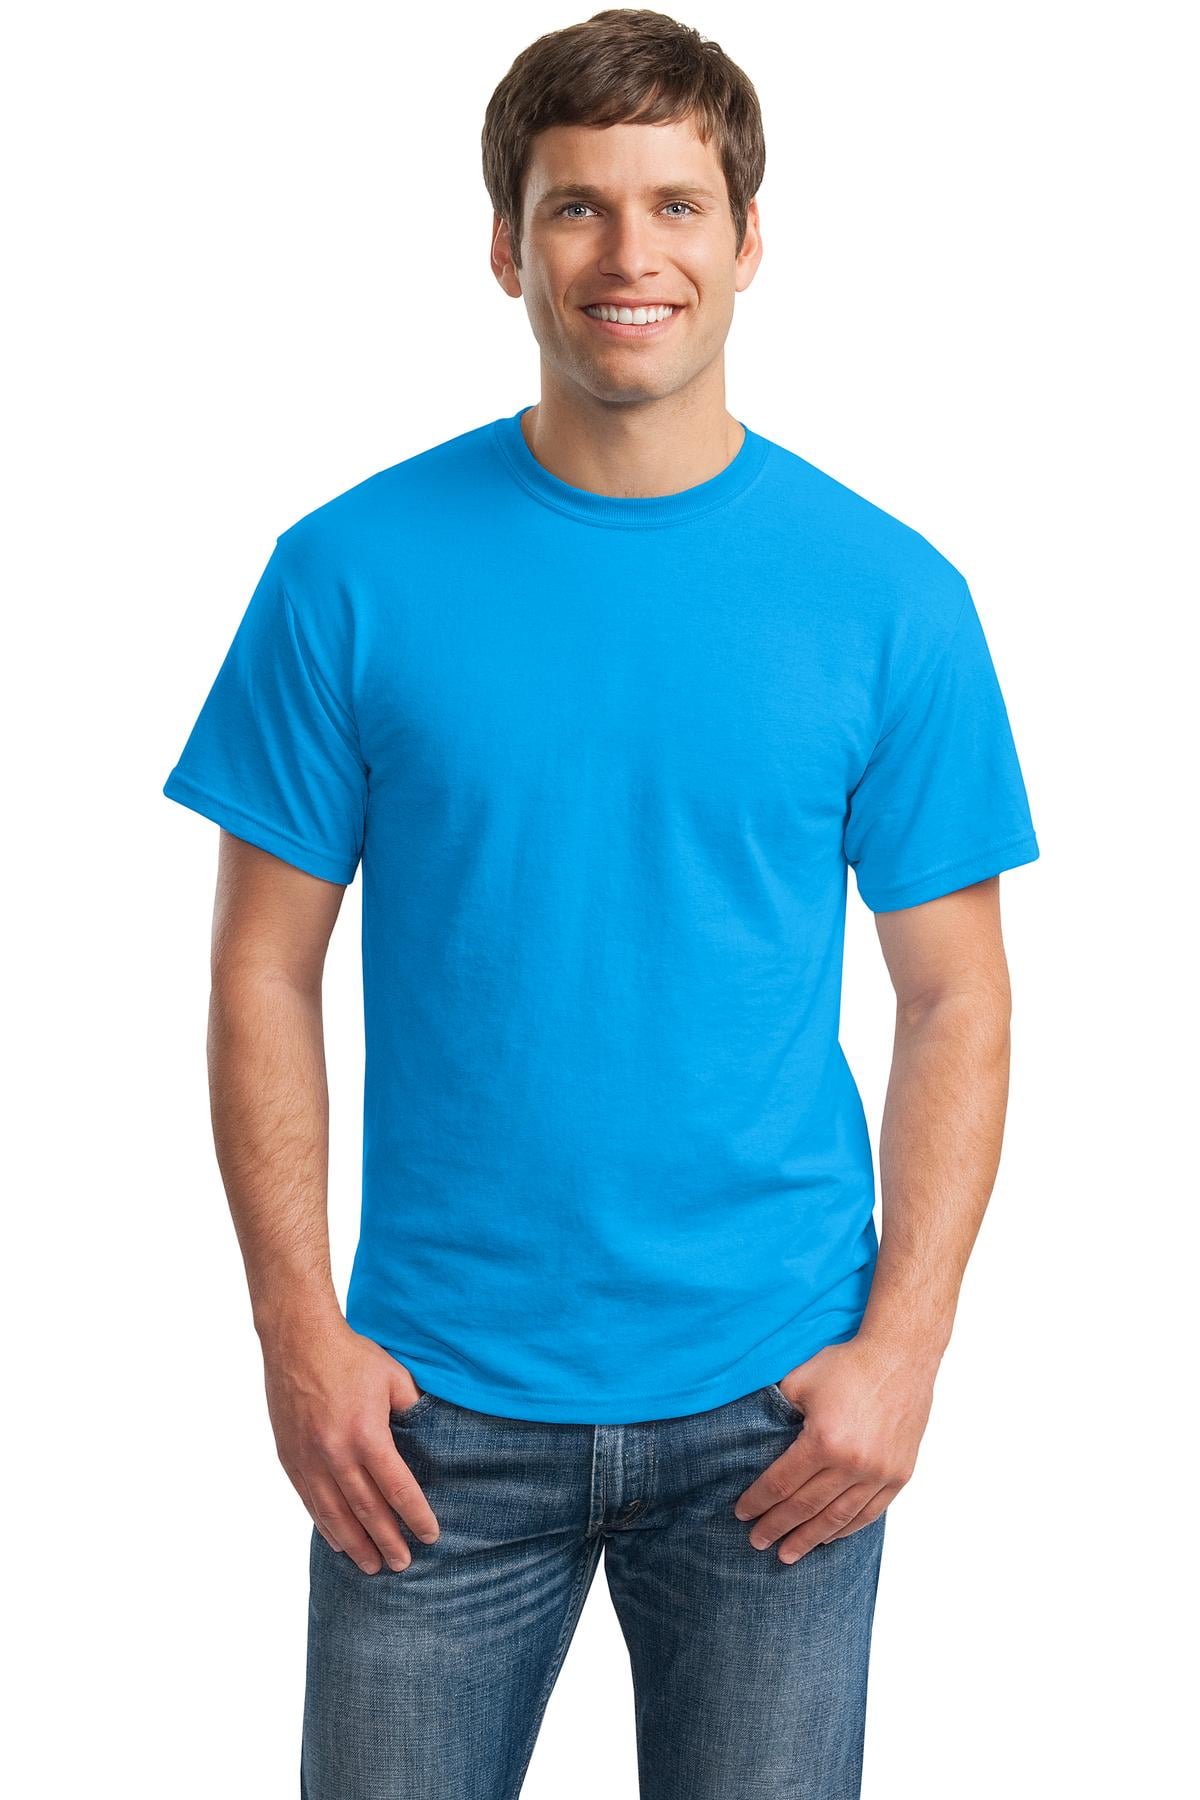 Gildan Mens DryBlend T-Shirt 